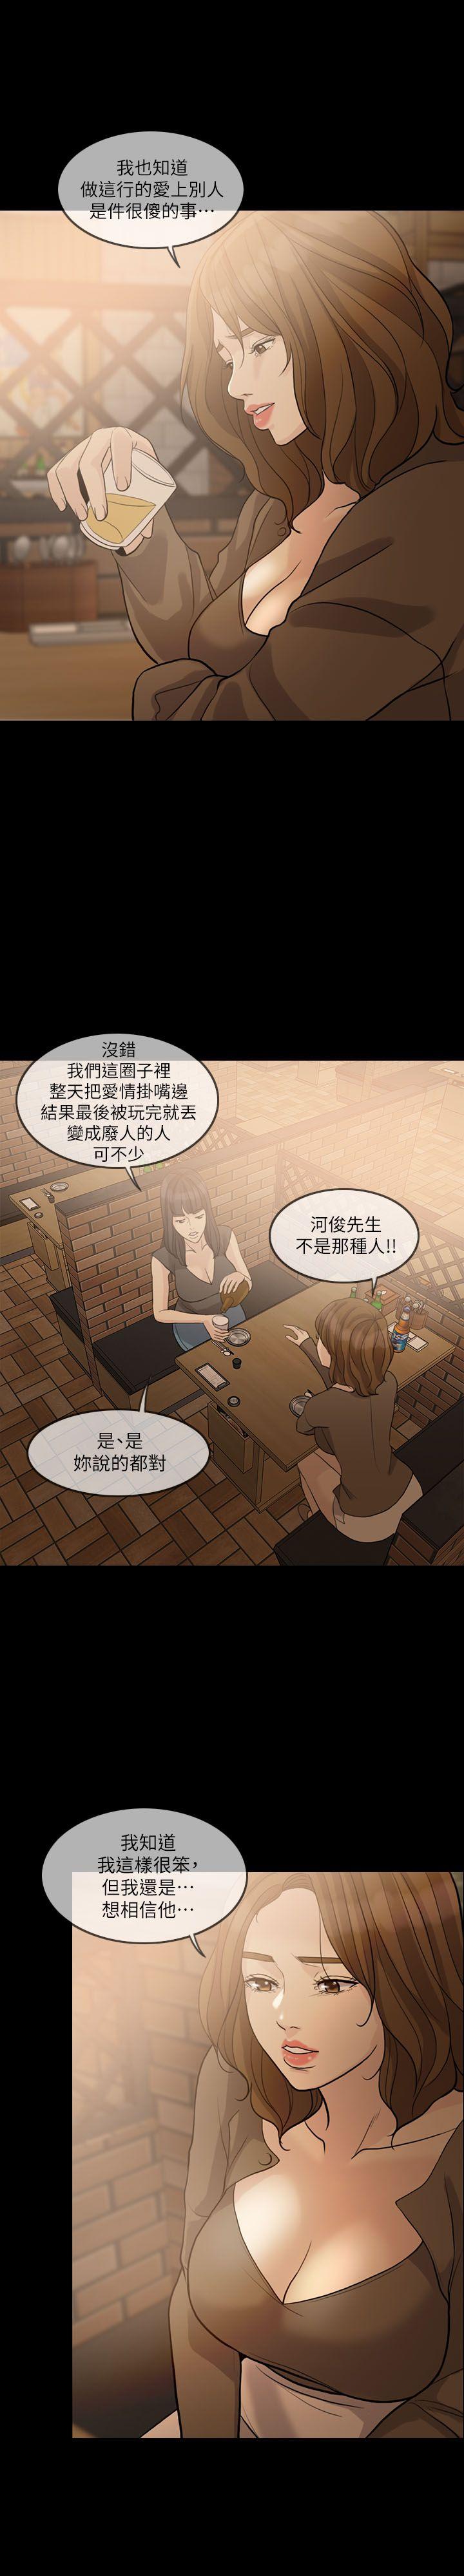 韩国污漫画 失控的愛 第15话-轰轰烈烈地来一场 9